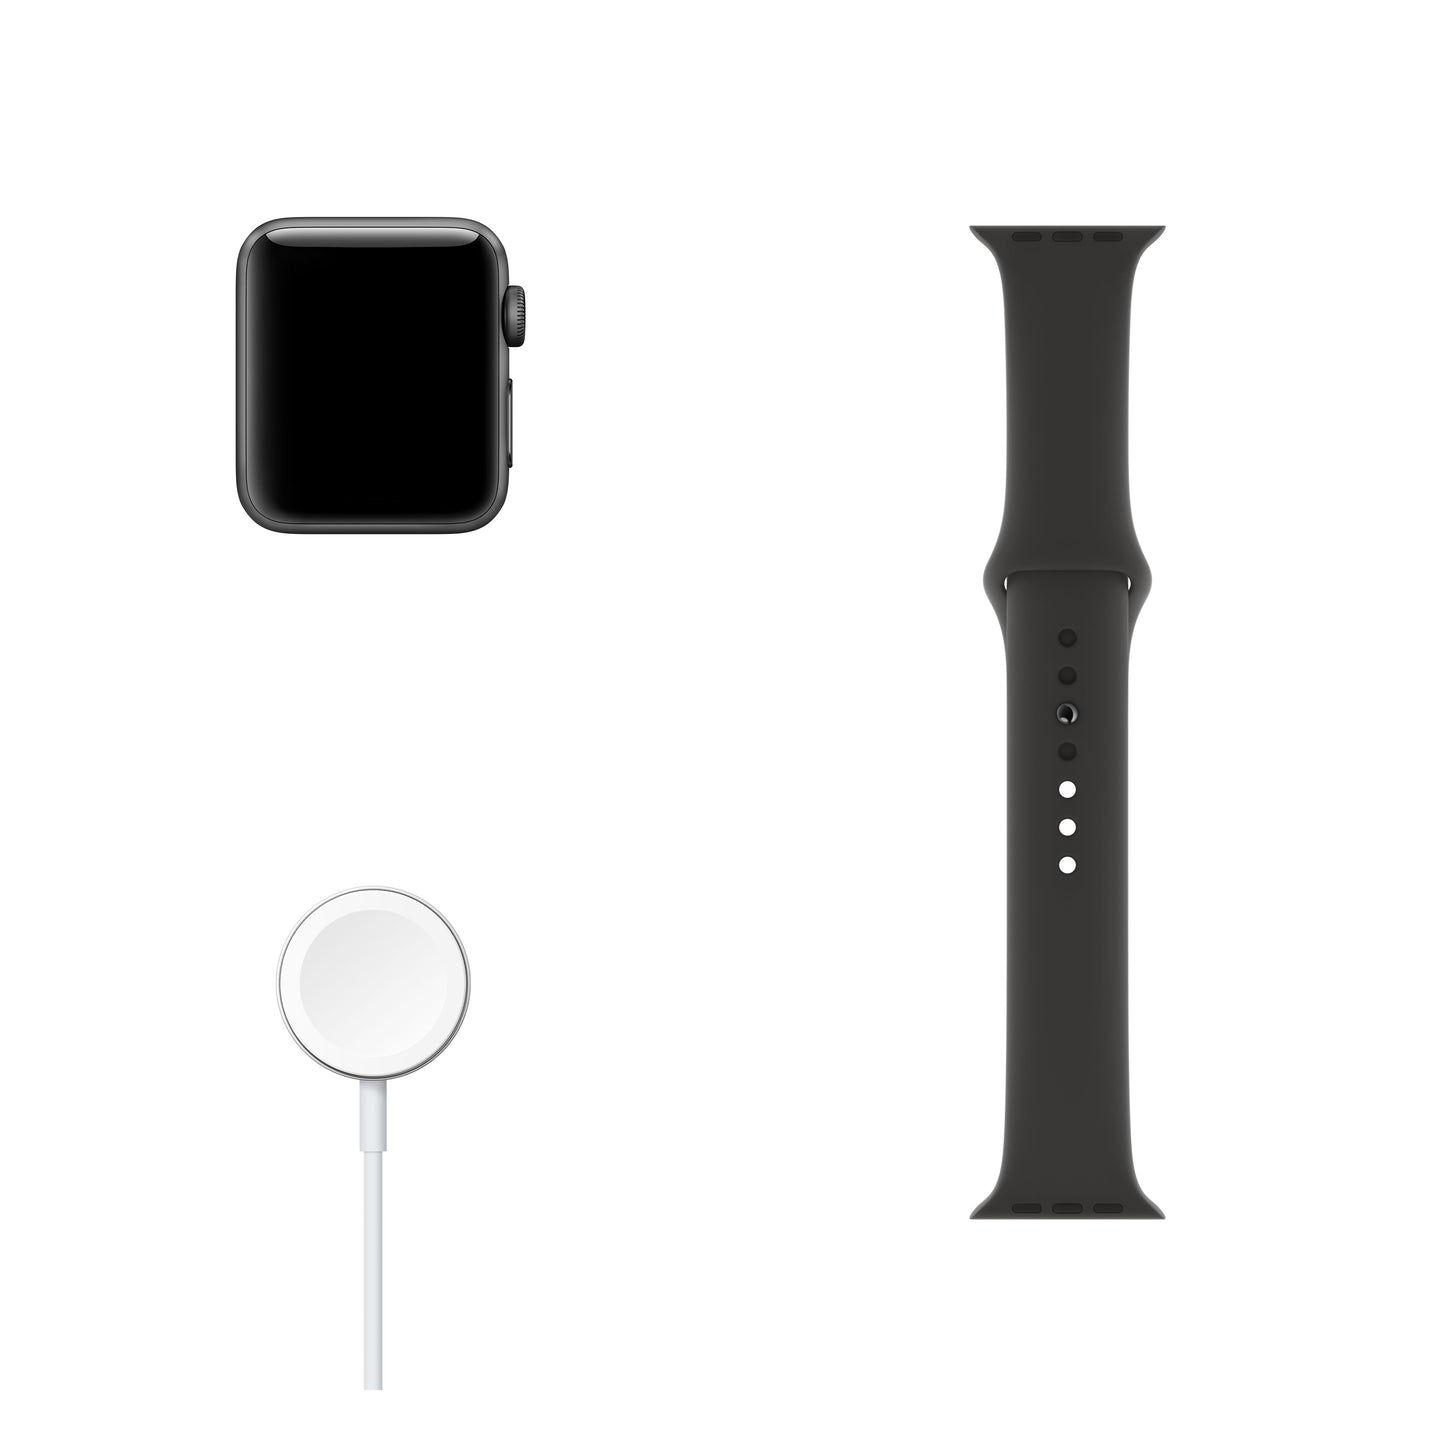 Apple Watch Series 3 (GPS) con caja de 38 mm de aluminio en gris espacial y correa deportiva negra